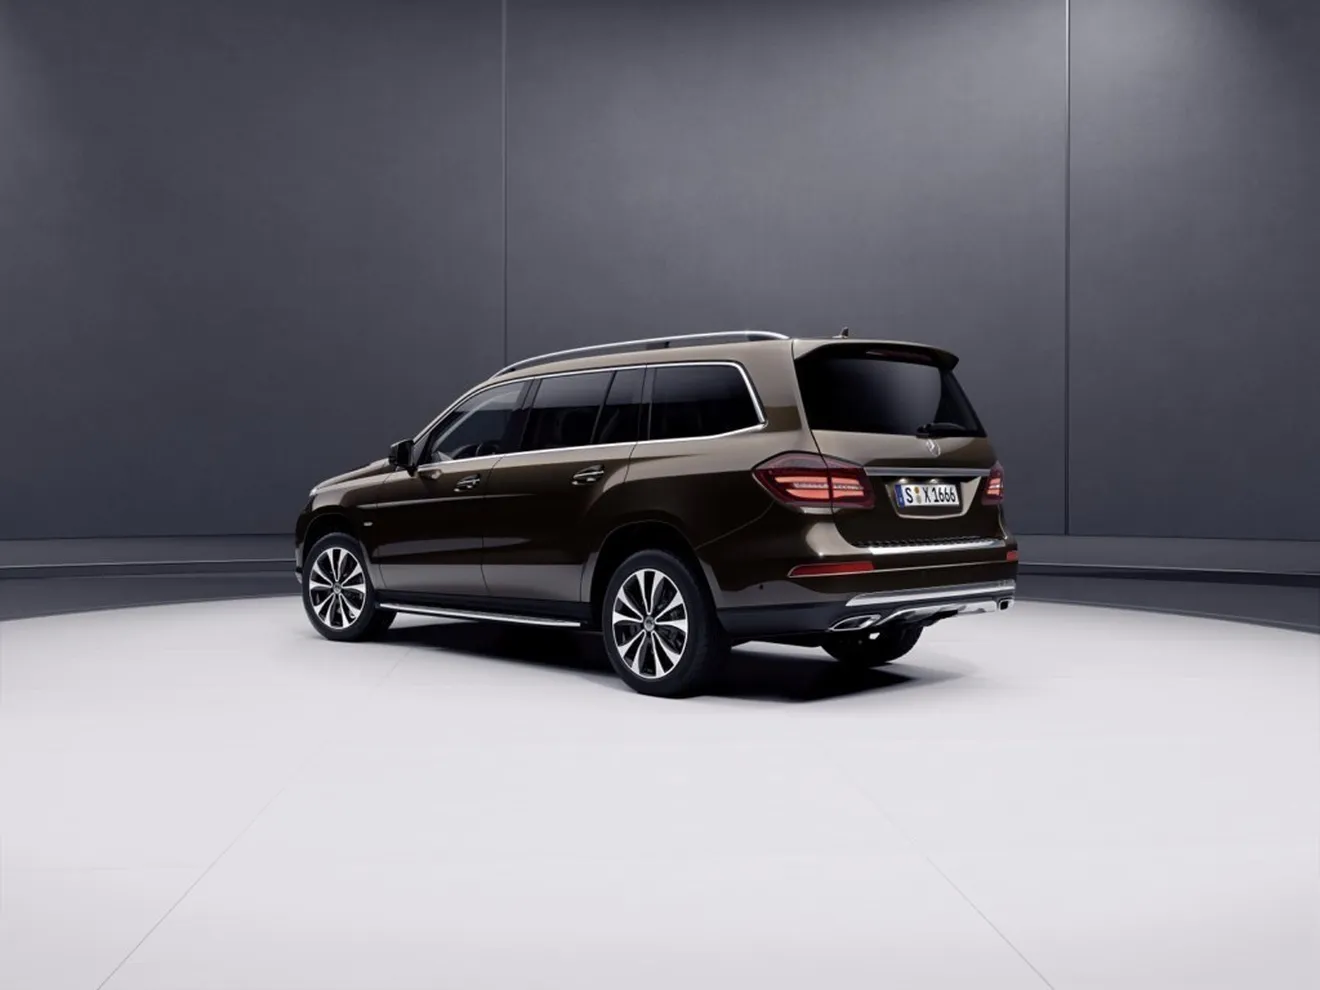 Mercedes-Maybach presentará un nuevo concepto adelantando un SUV de lujo en el Salón de Pekín